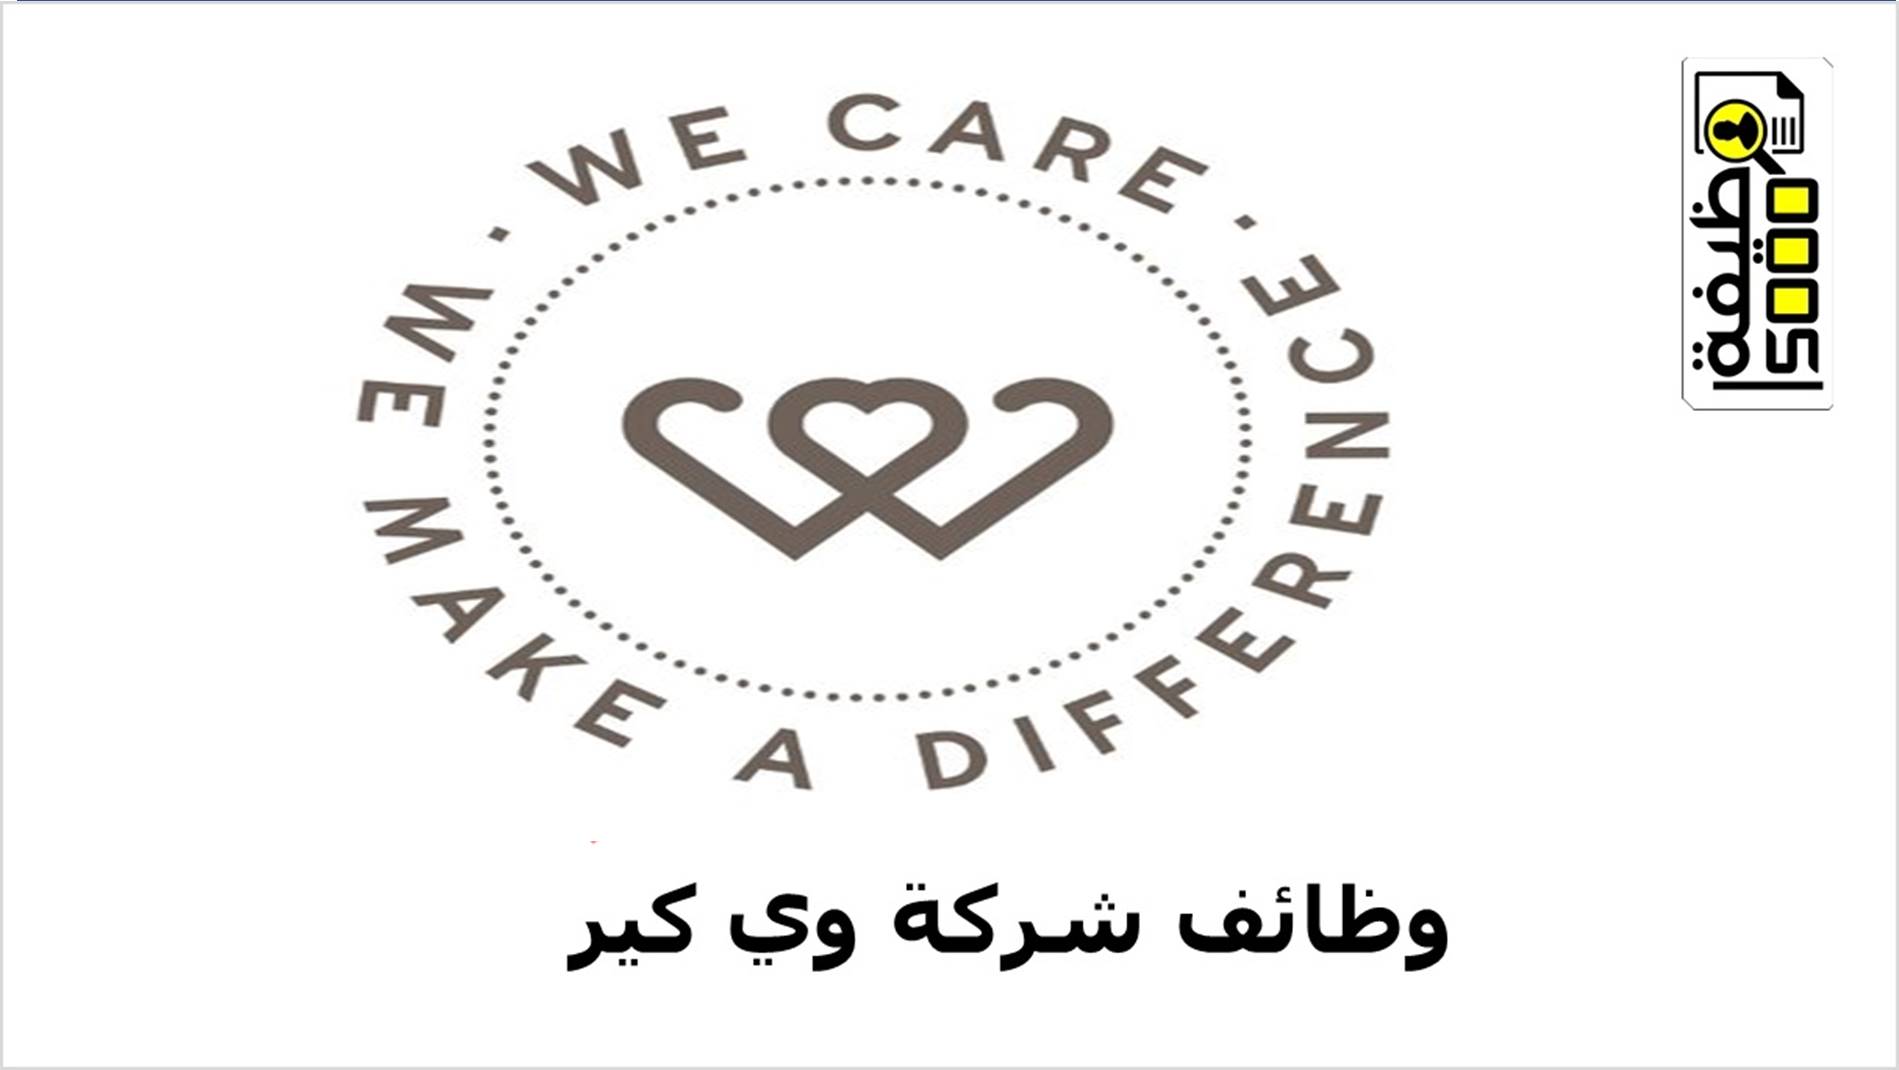 شركة وي كير بالكويت We care Kuwait تعلن عن وظائف شاغرة